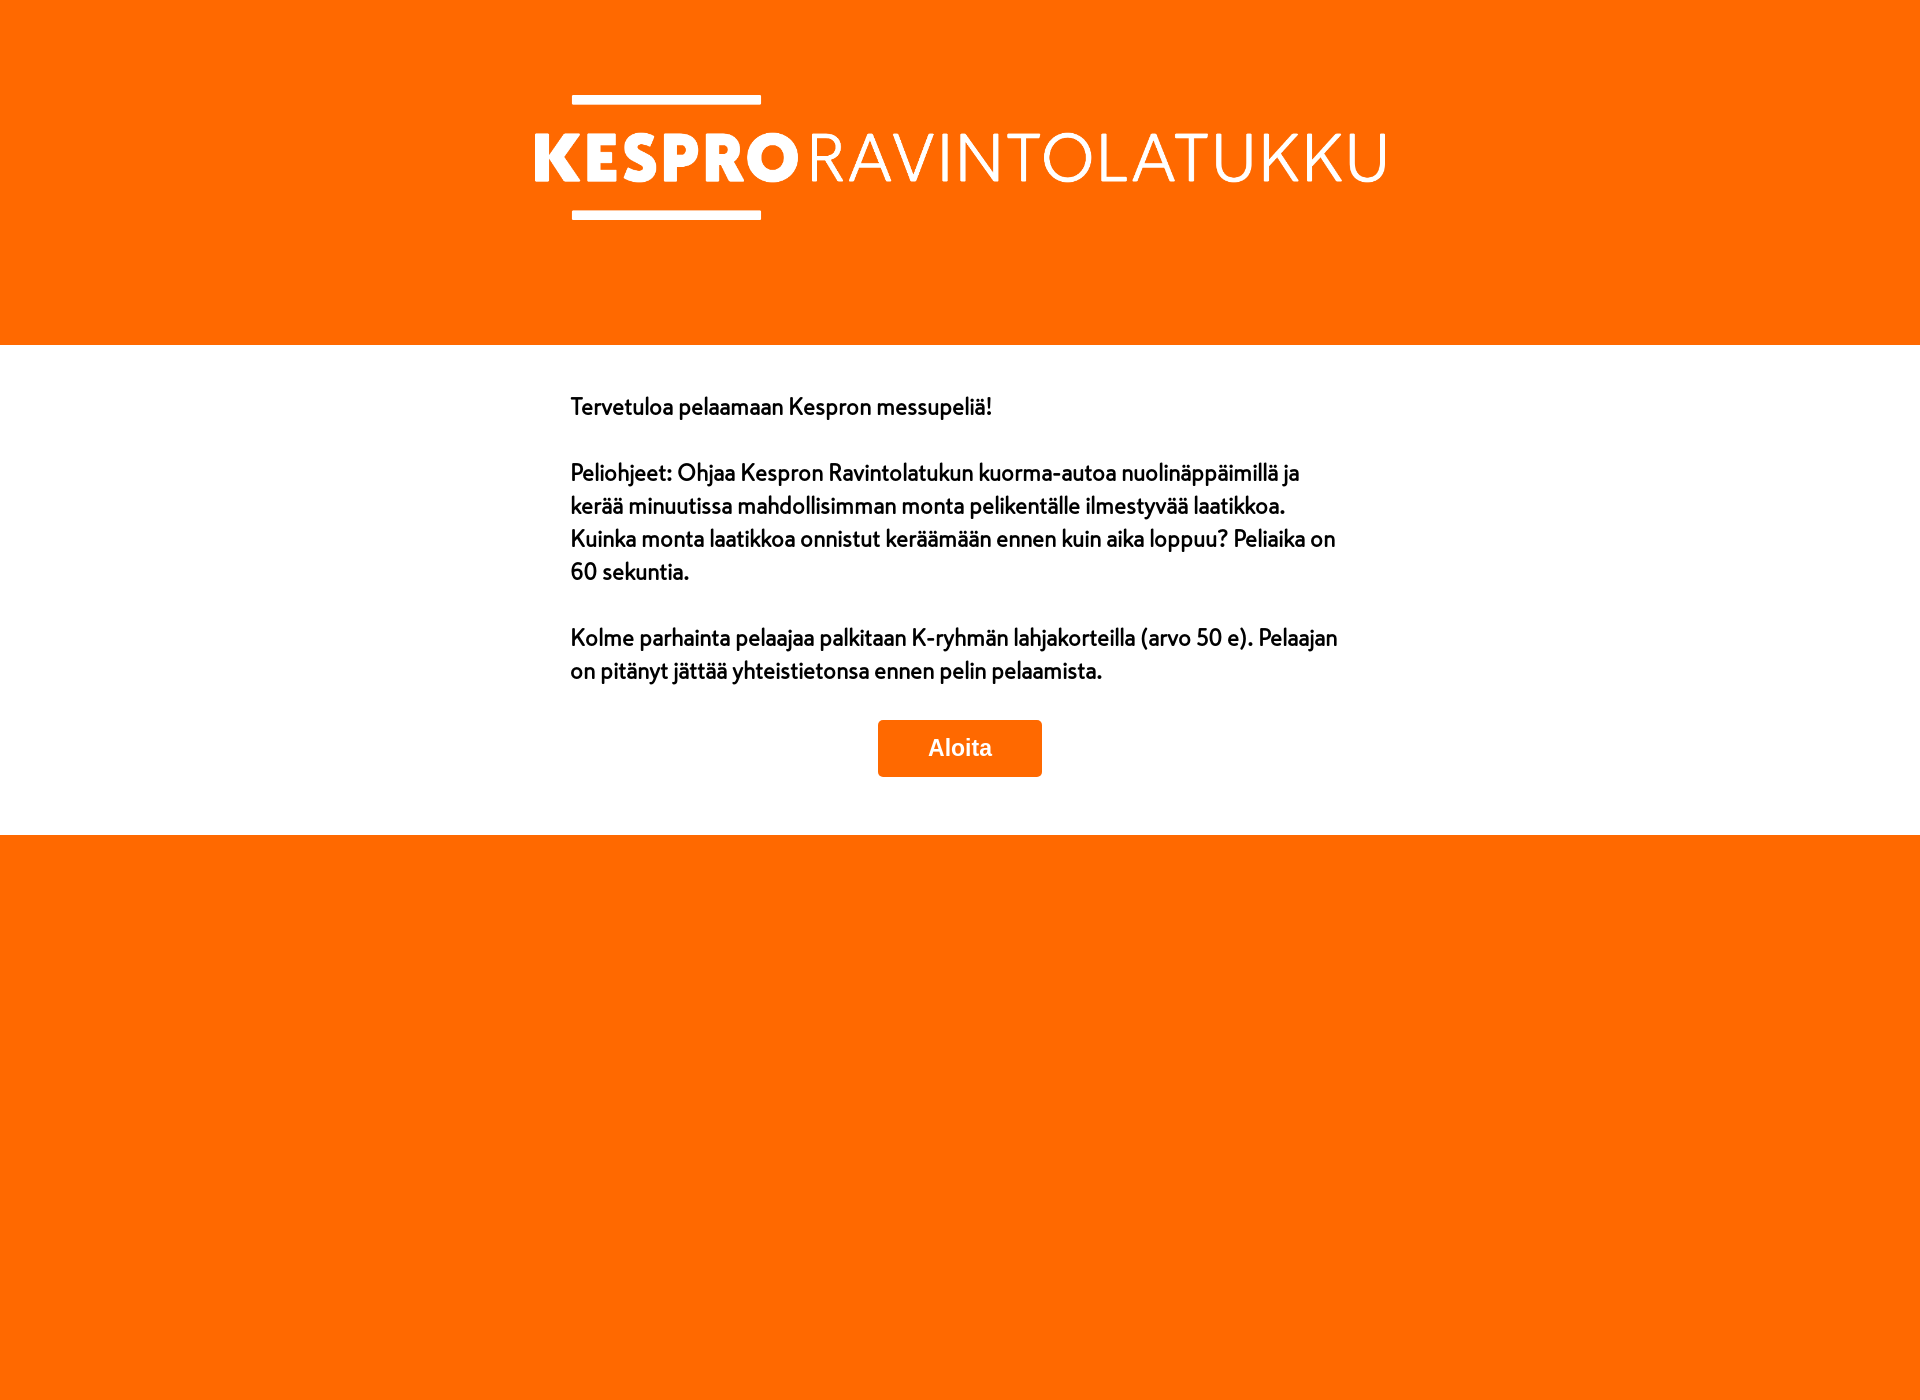 Skärmdump för kespropeli.fi